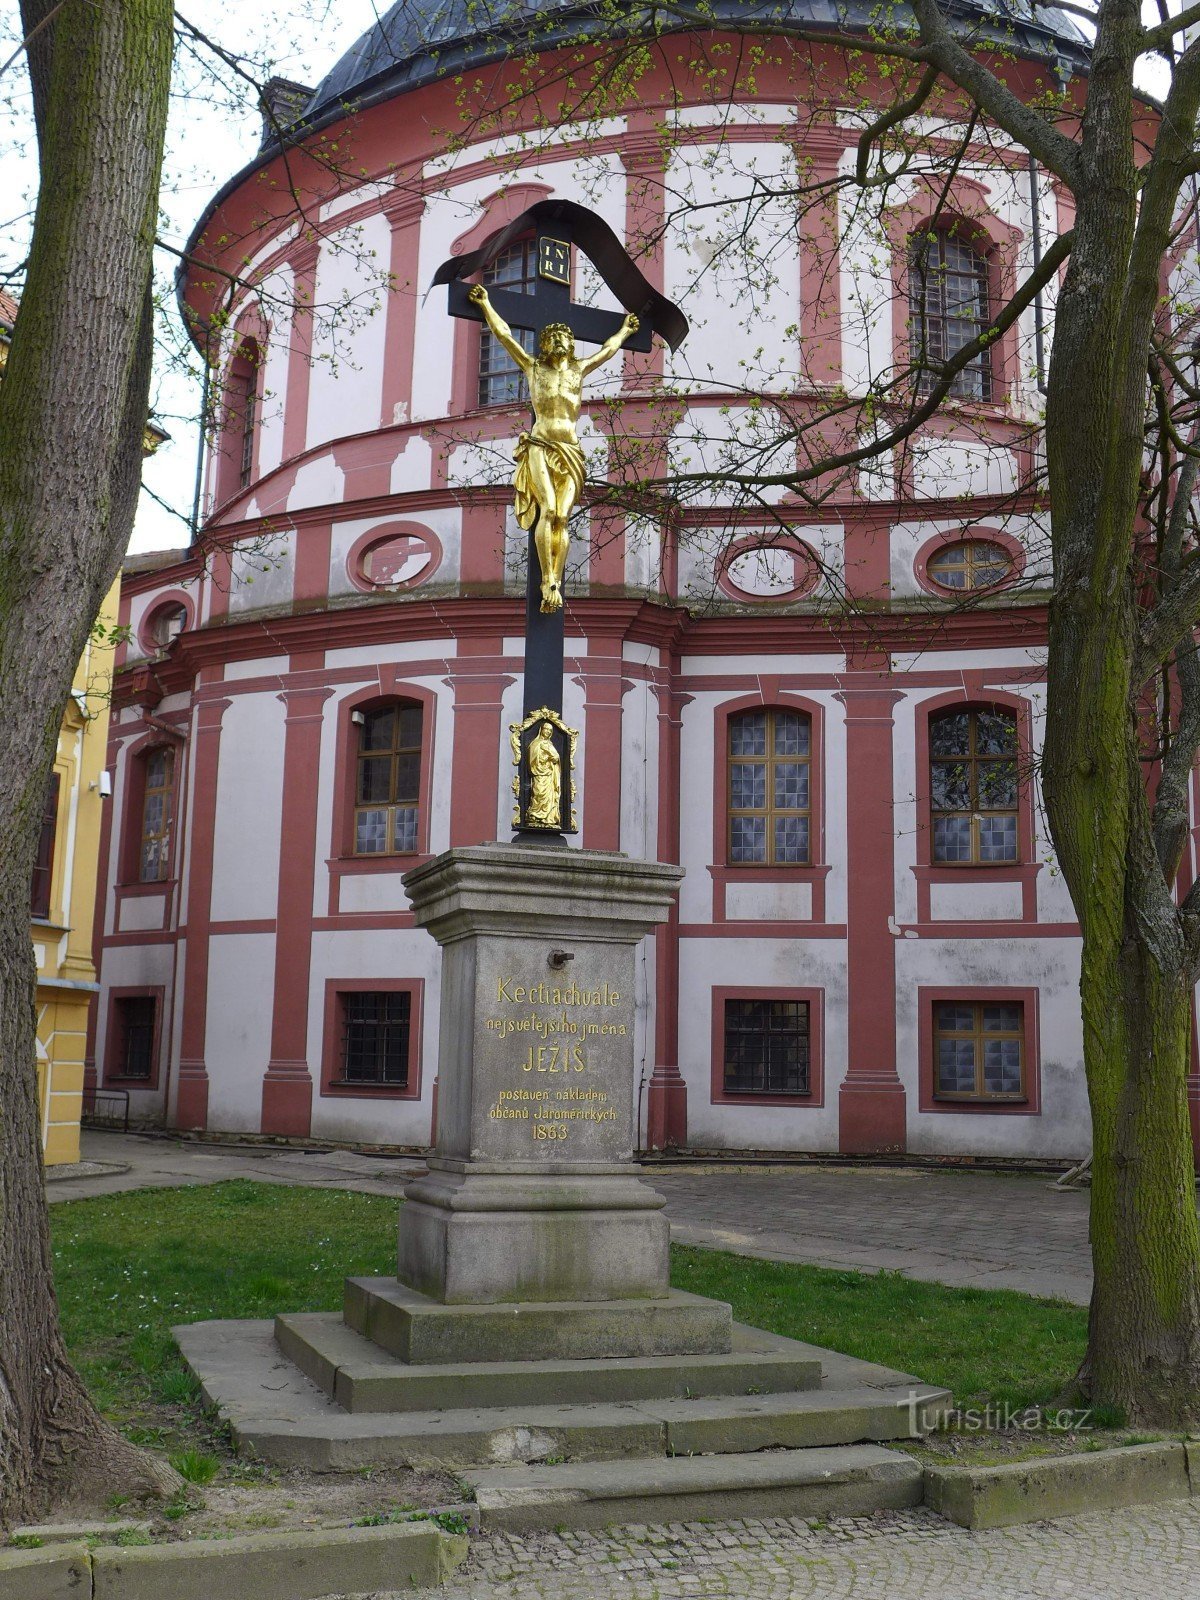 Jaroměřice nad Rokytnou - Church of St. Markets